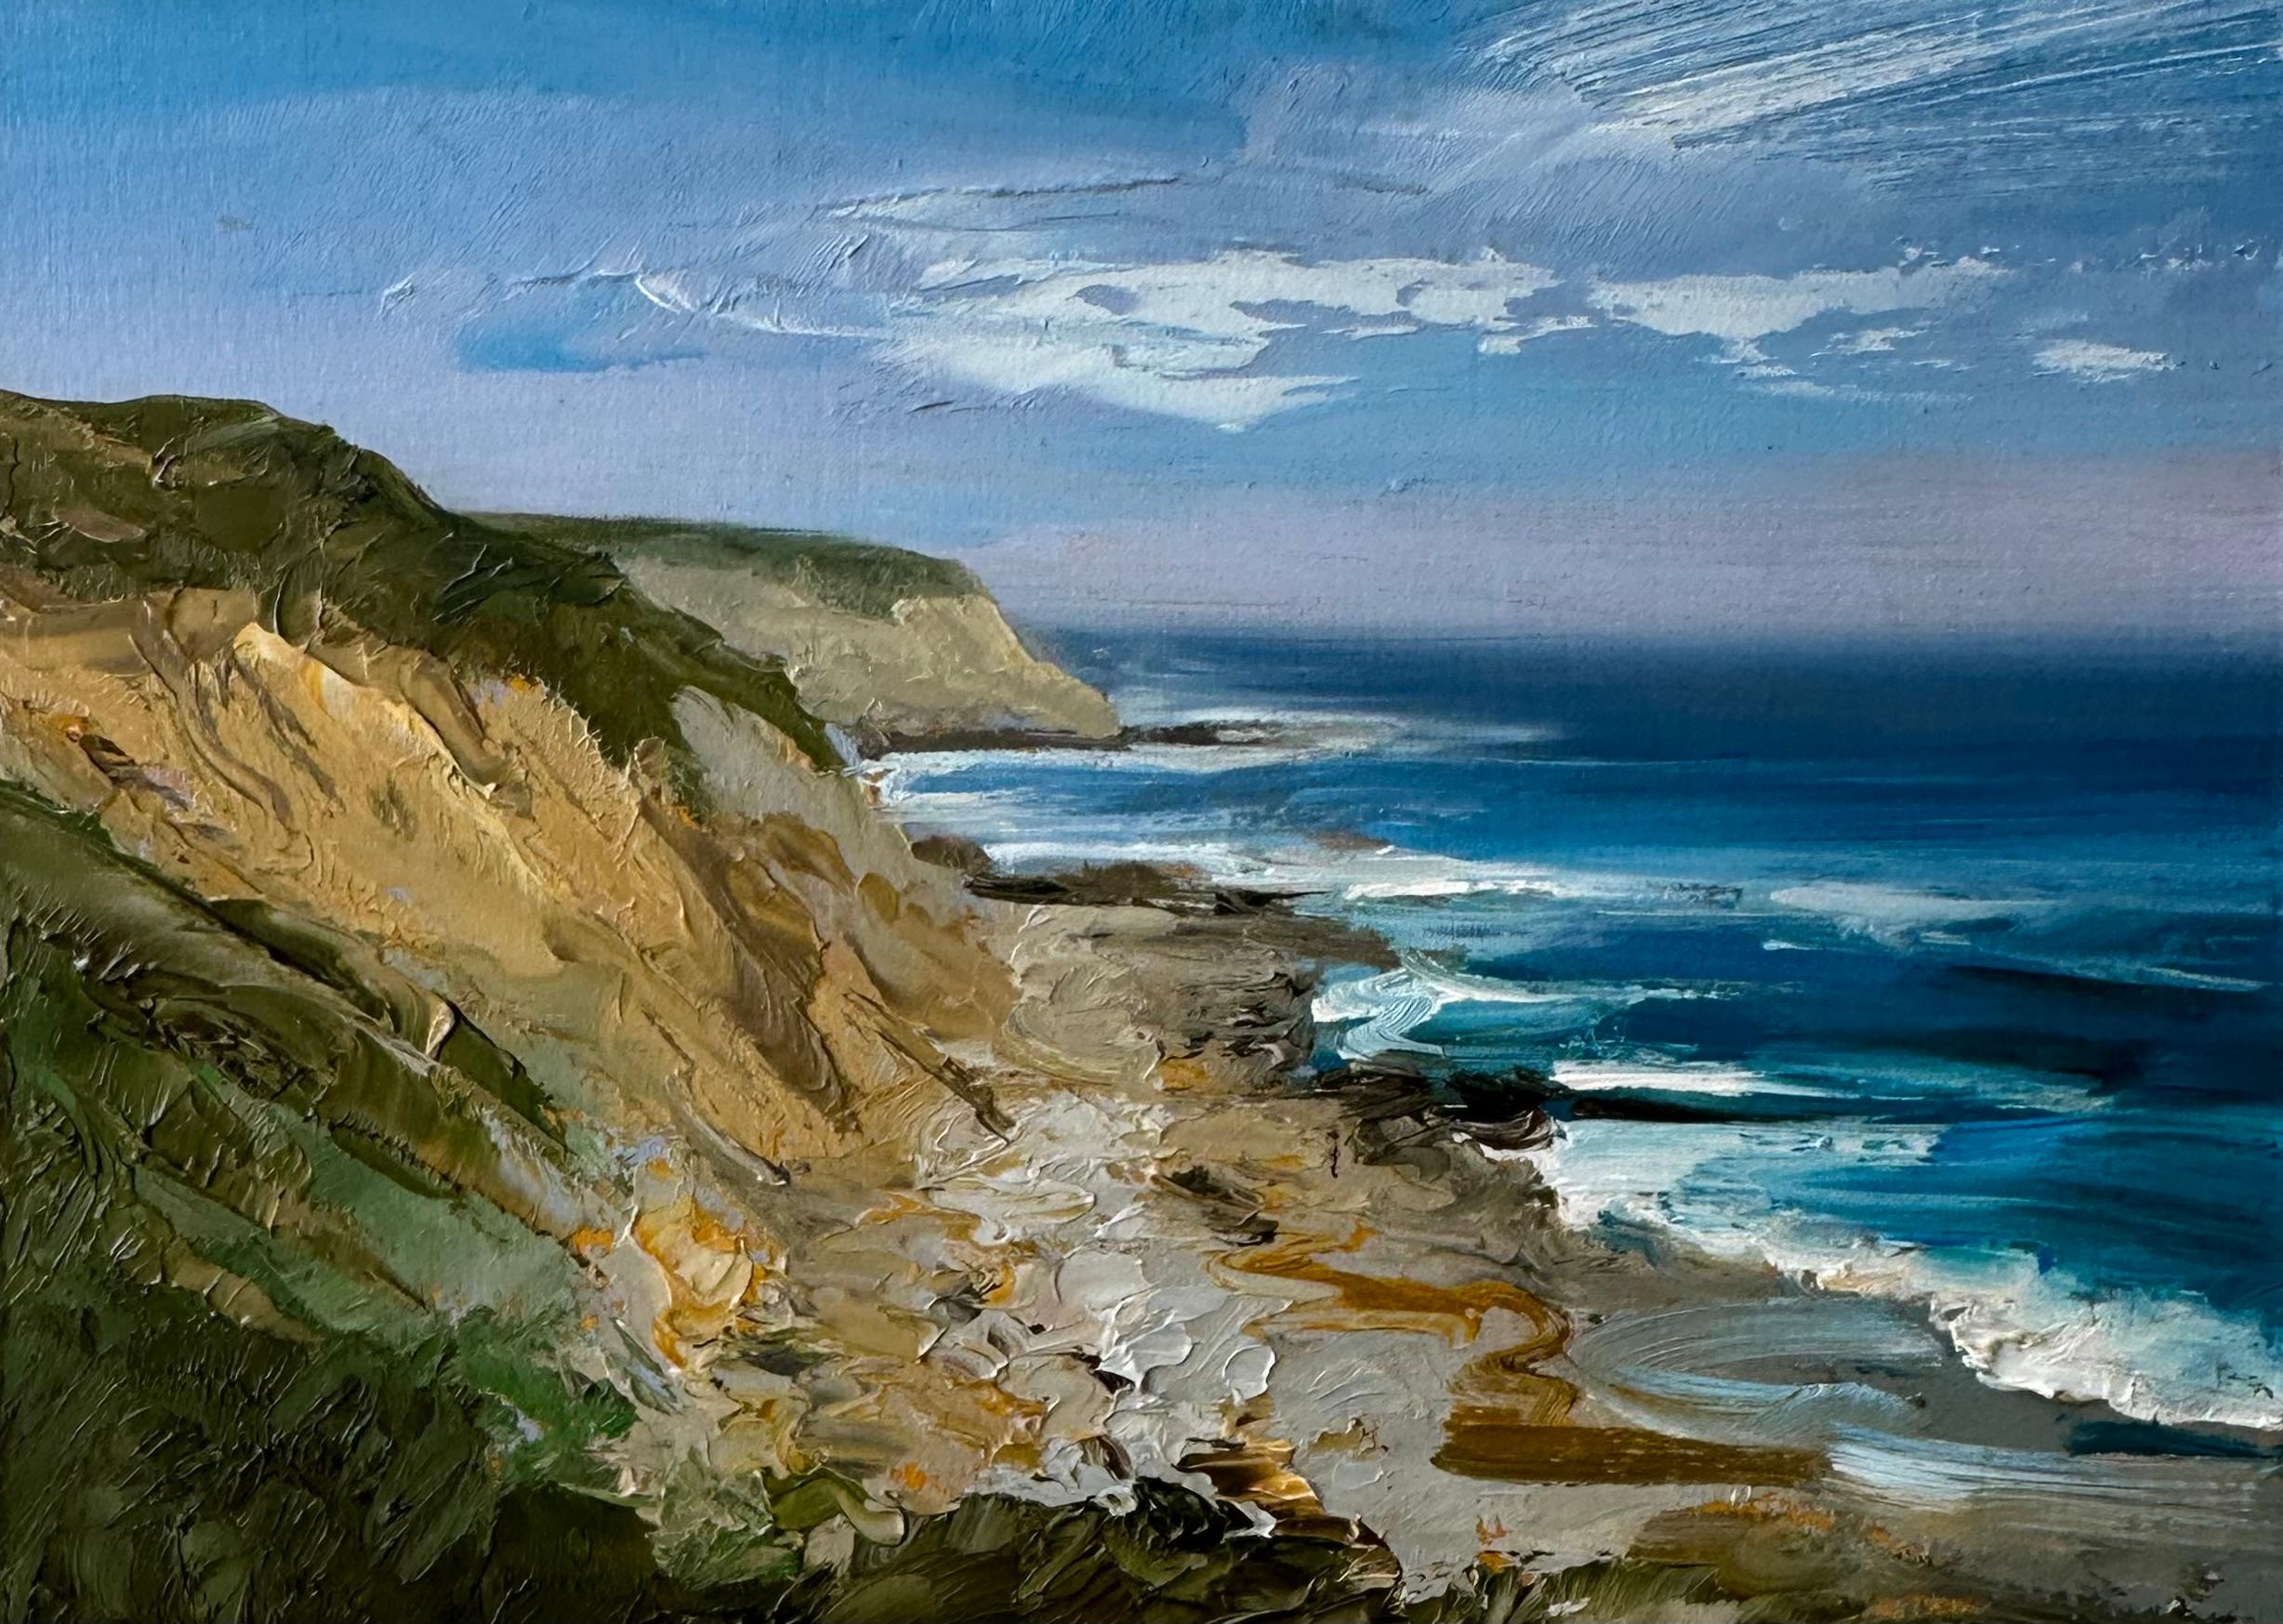 Whitney Knapp Landscape Painting – "These Days", ein Ölgemälde mit einer malerischen Klippe und Küste